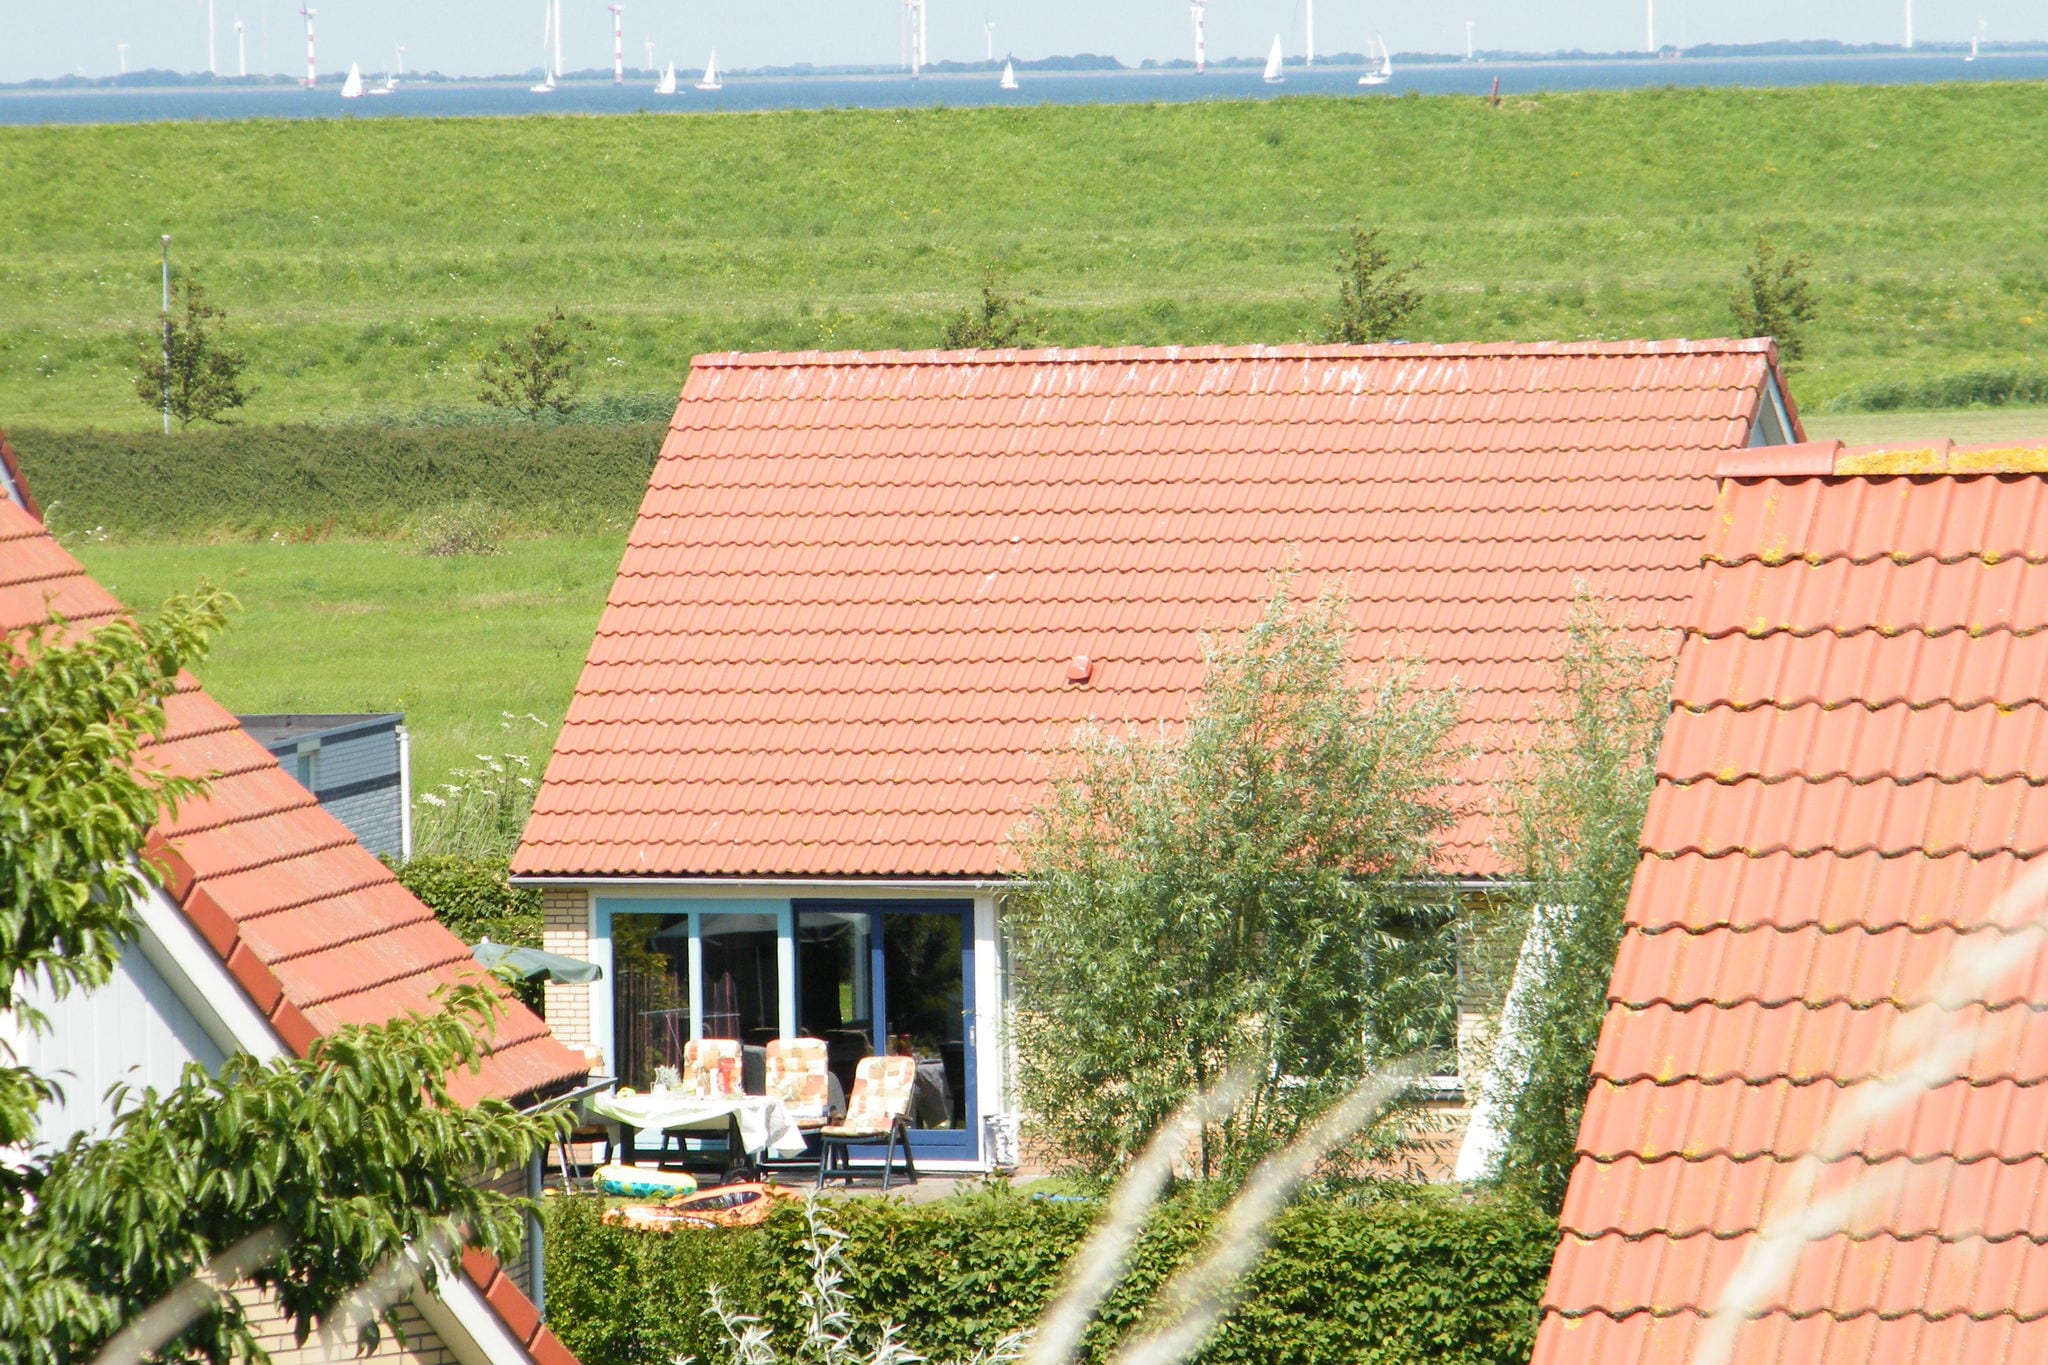 Huis met vaatwasser, 19 km. van Hoorn